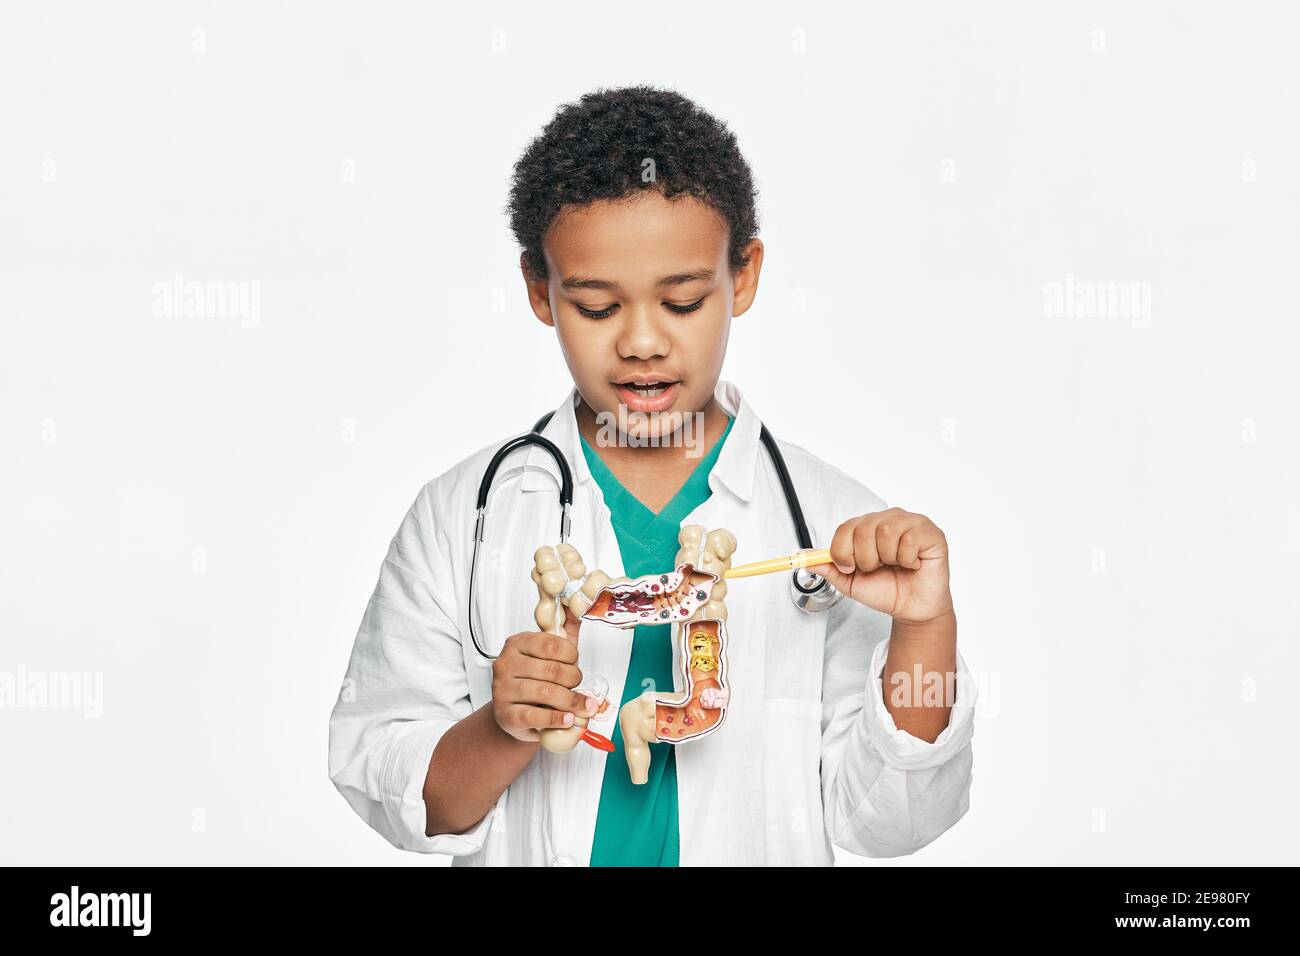 Afroamerikanischer Junge während des Lernens der menschlichen Anatomie, hält ein anatomisches Darmmodell, um Körperstruktur zu studieren Stockfoto